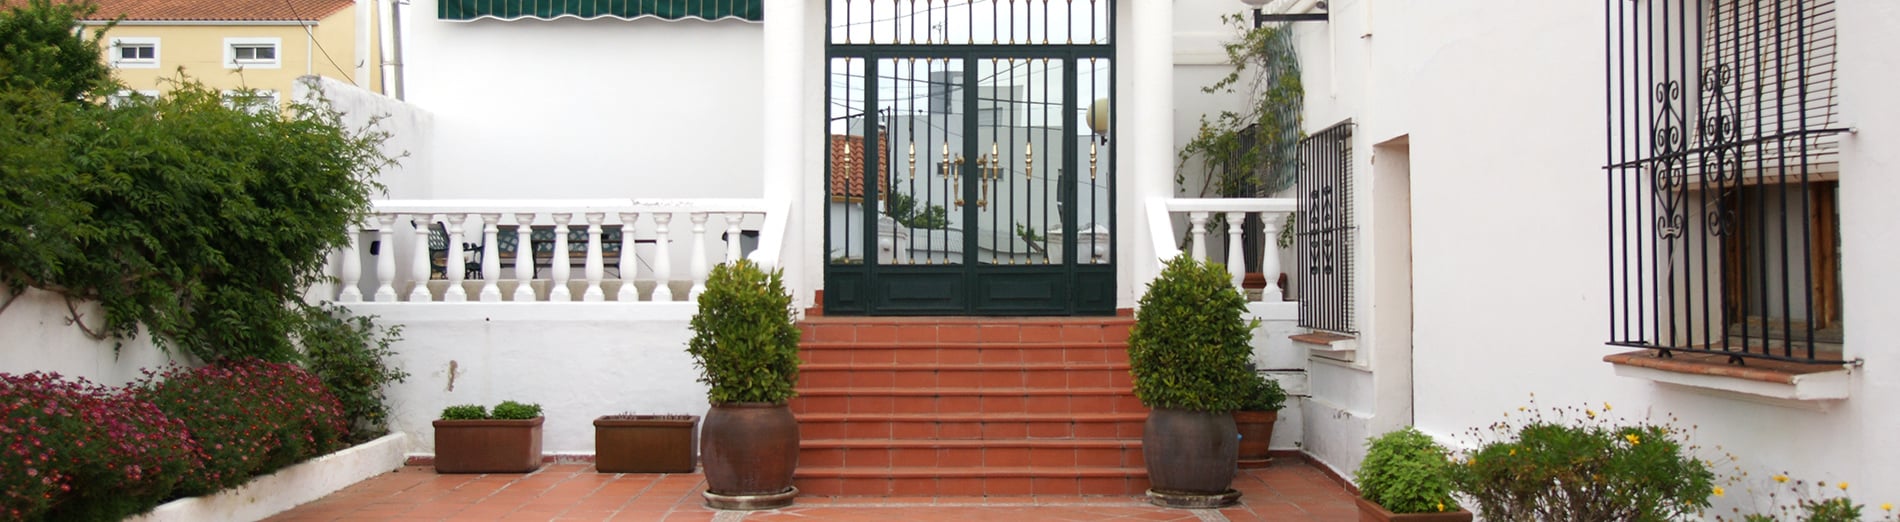 Residencia Santa Eulalia